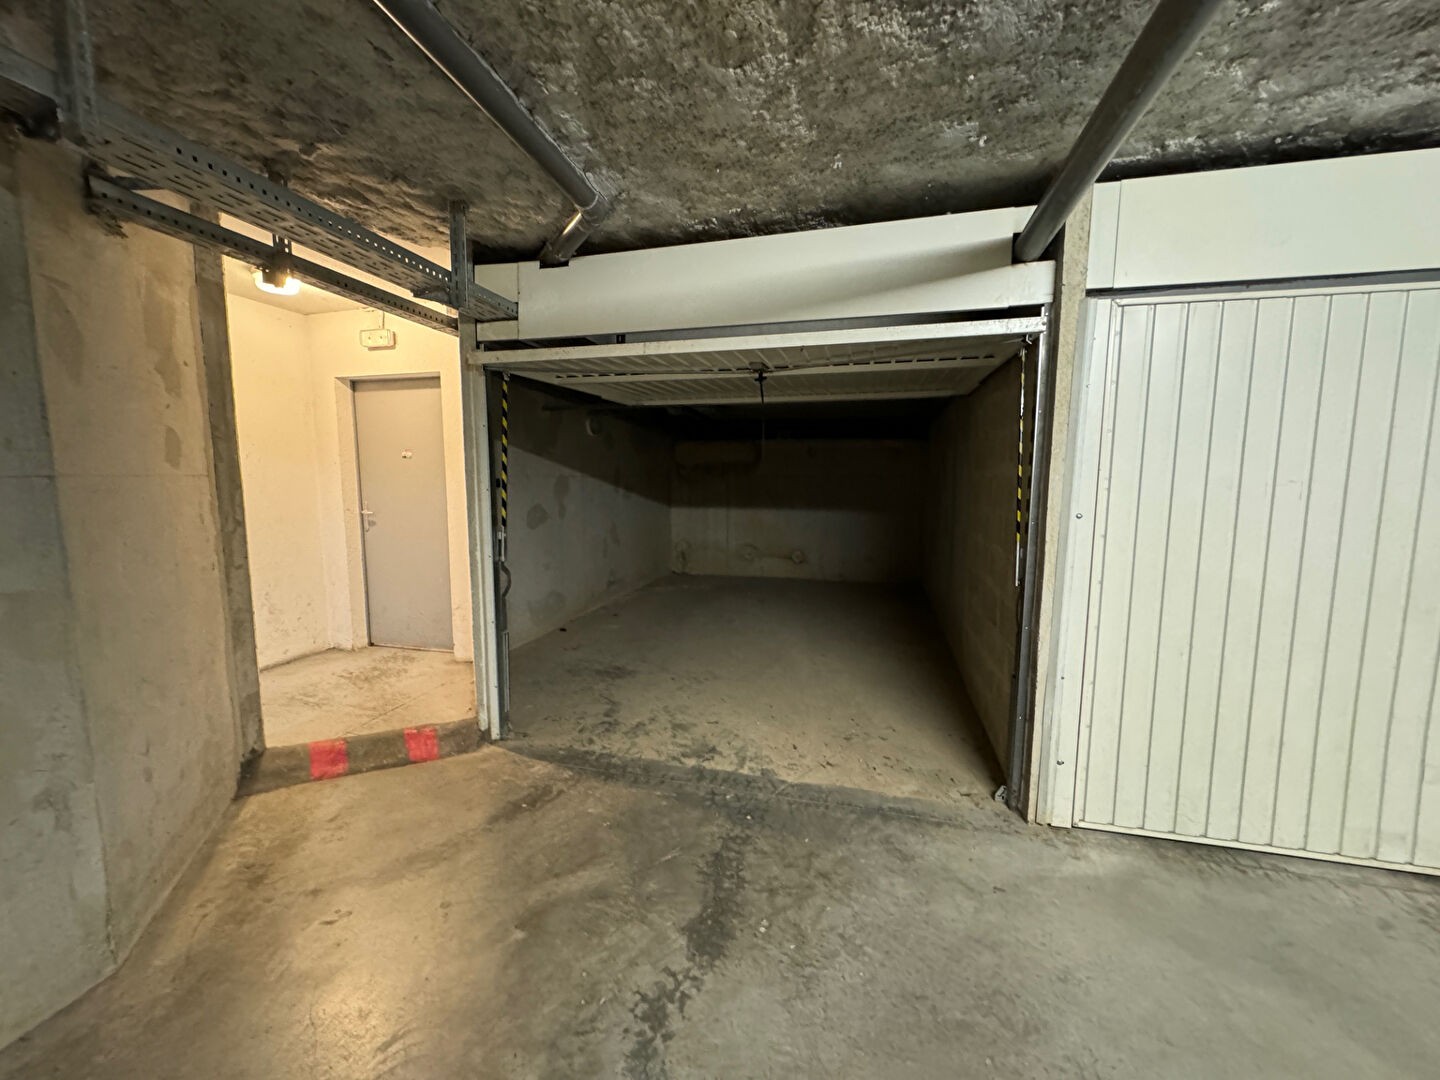 Vente Garage / Parking à Marseille 12e arrondissement 0 pièce